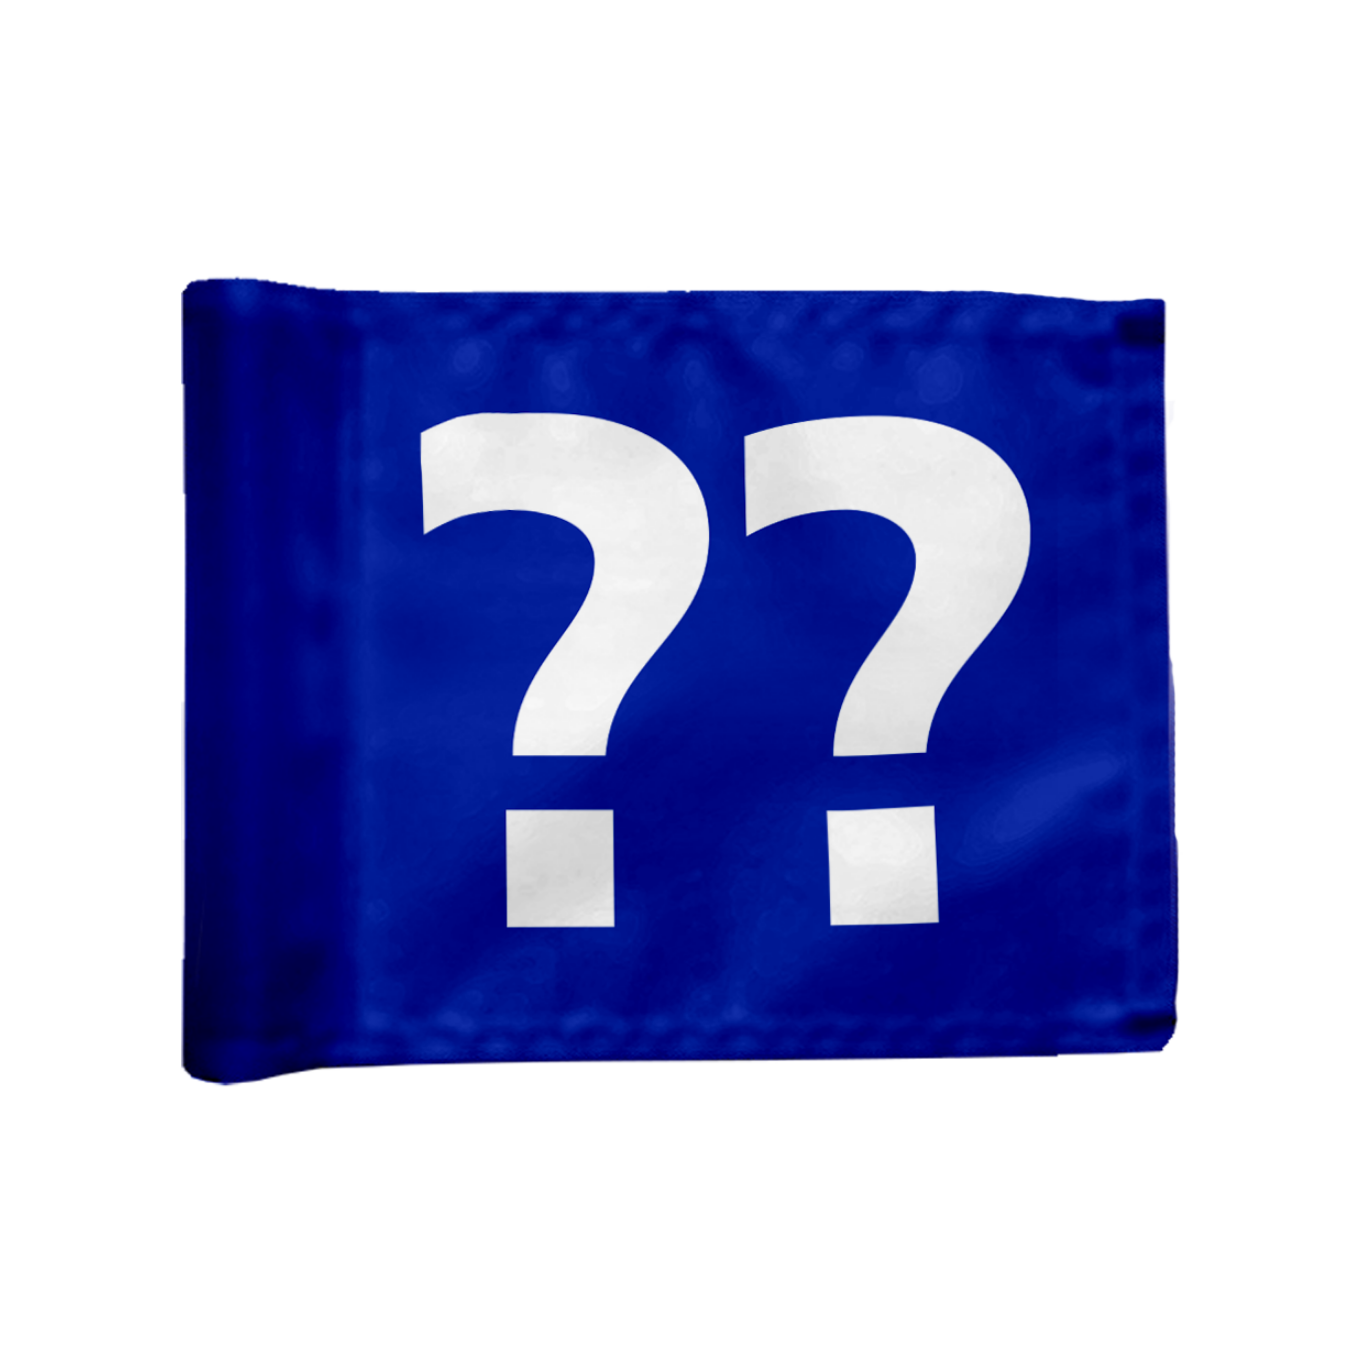 Styckvis Adventure Golf flagga i blå med valfritt hålnummer, 200 gram flaggduk